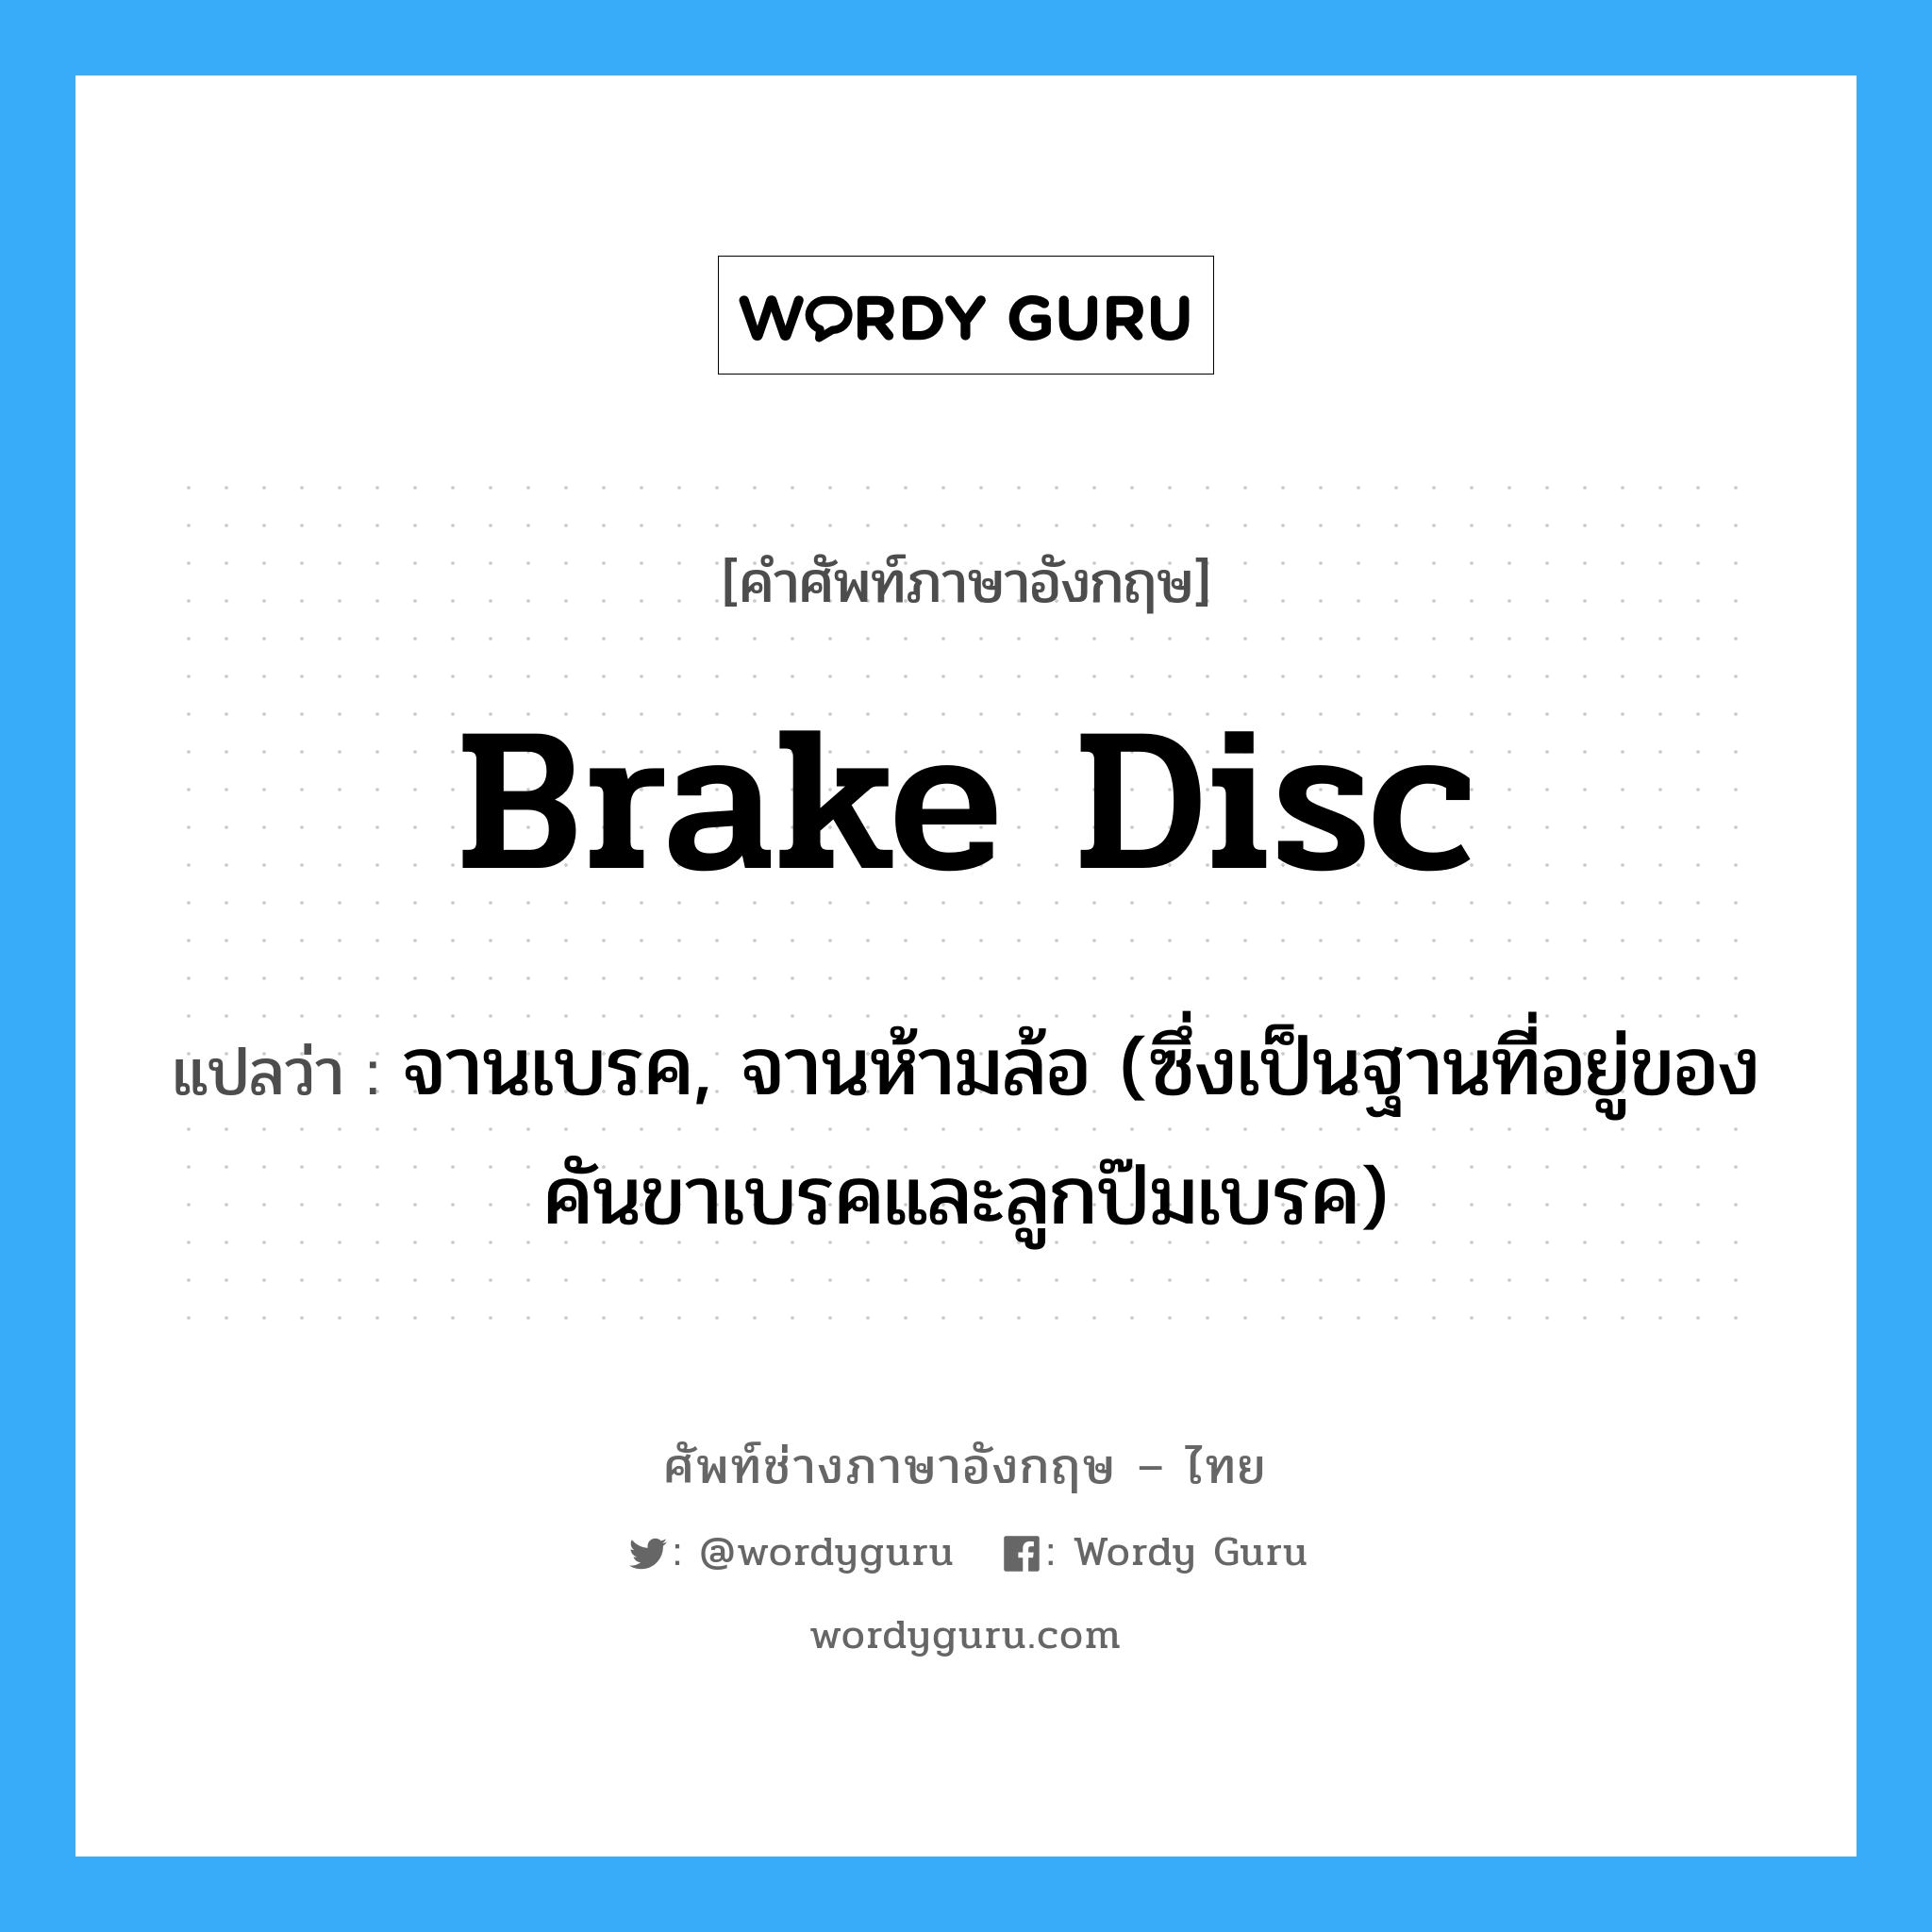 brake disc แปลว่า?, คำศัพท์ช่างภาษาอังกฤษ - ไทย brake disc คำศัพท์ภาษาอังกฤษ brake disc แปลว่า จานเบรค, จานห้ามล้อ (ซึ่งเป็นฐานที่อยู่ของคันขาเบรคและลูกป๊มเบรค)